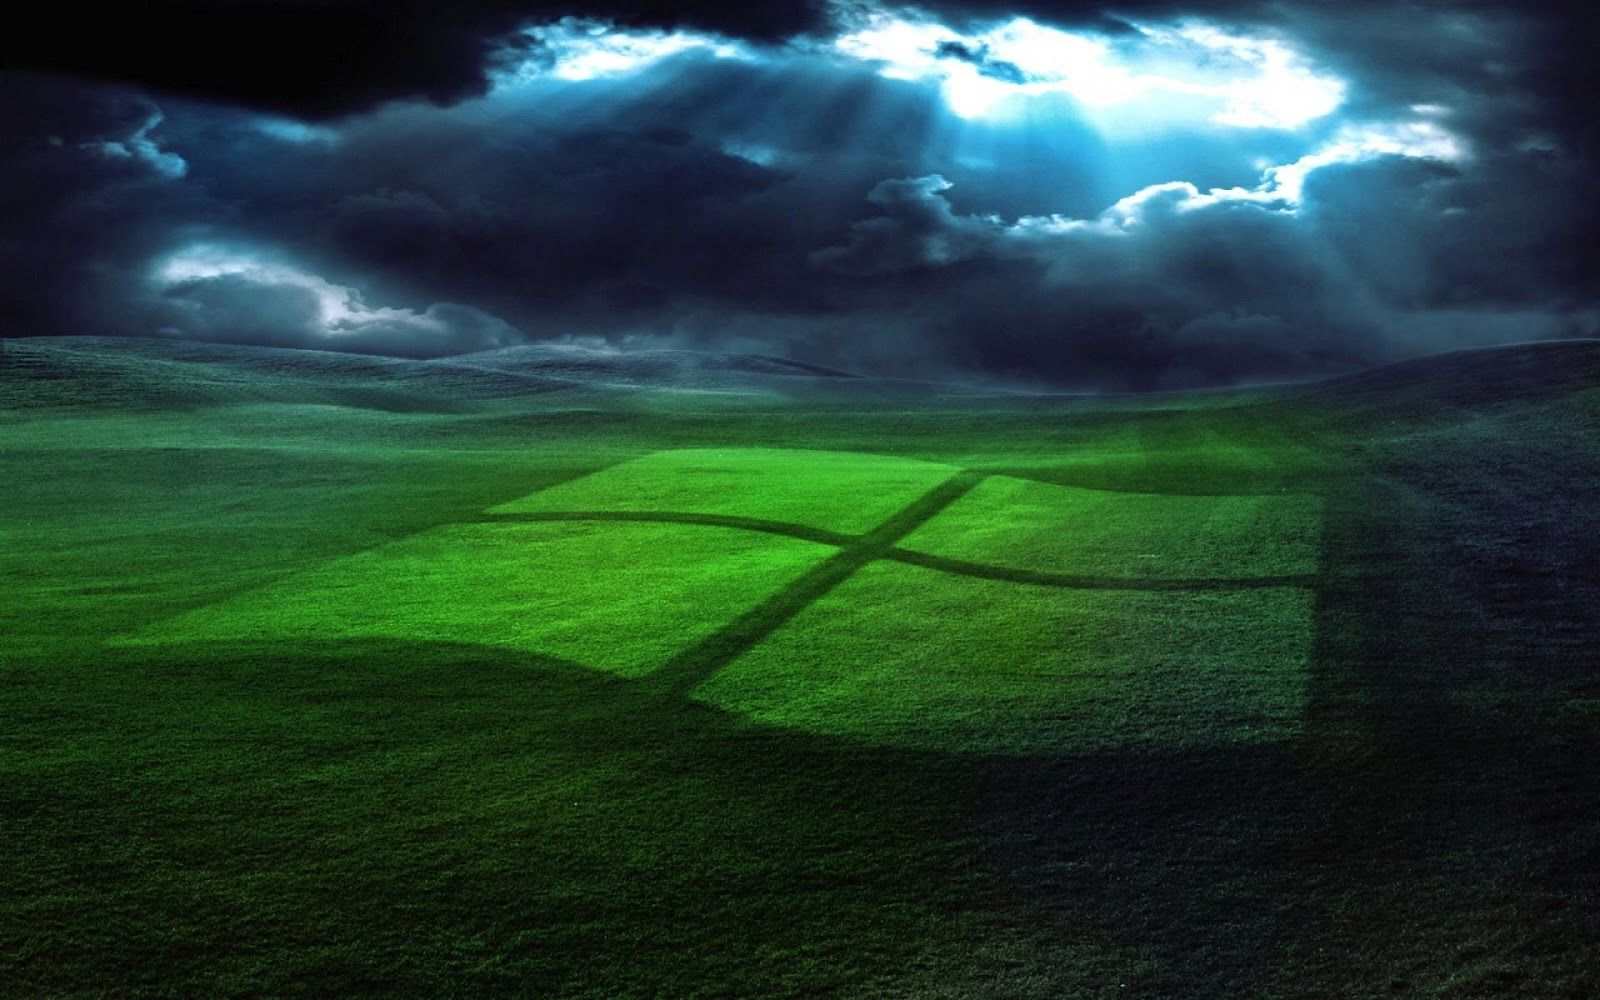 Hình nền đẹp Windows XP: Với bộ sưu tập hình nền đẹp Windows XP, bạn sẽ tìm thấy những bức ảnh đầy sức hút và quyến rũ, mang lại cảm giác thư giãn và thoải mái cho mắt khi ngắm nhìn. Được tối ưu hoá để thích hợp với màn hình của máy tính, hình ảnh sẽ trở nên sắc nét và sinh động hơn bao giờ hết.